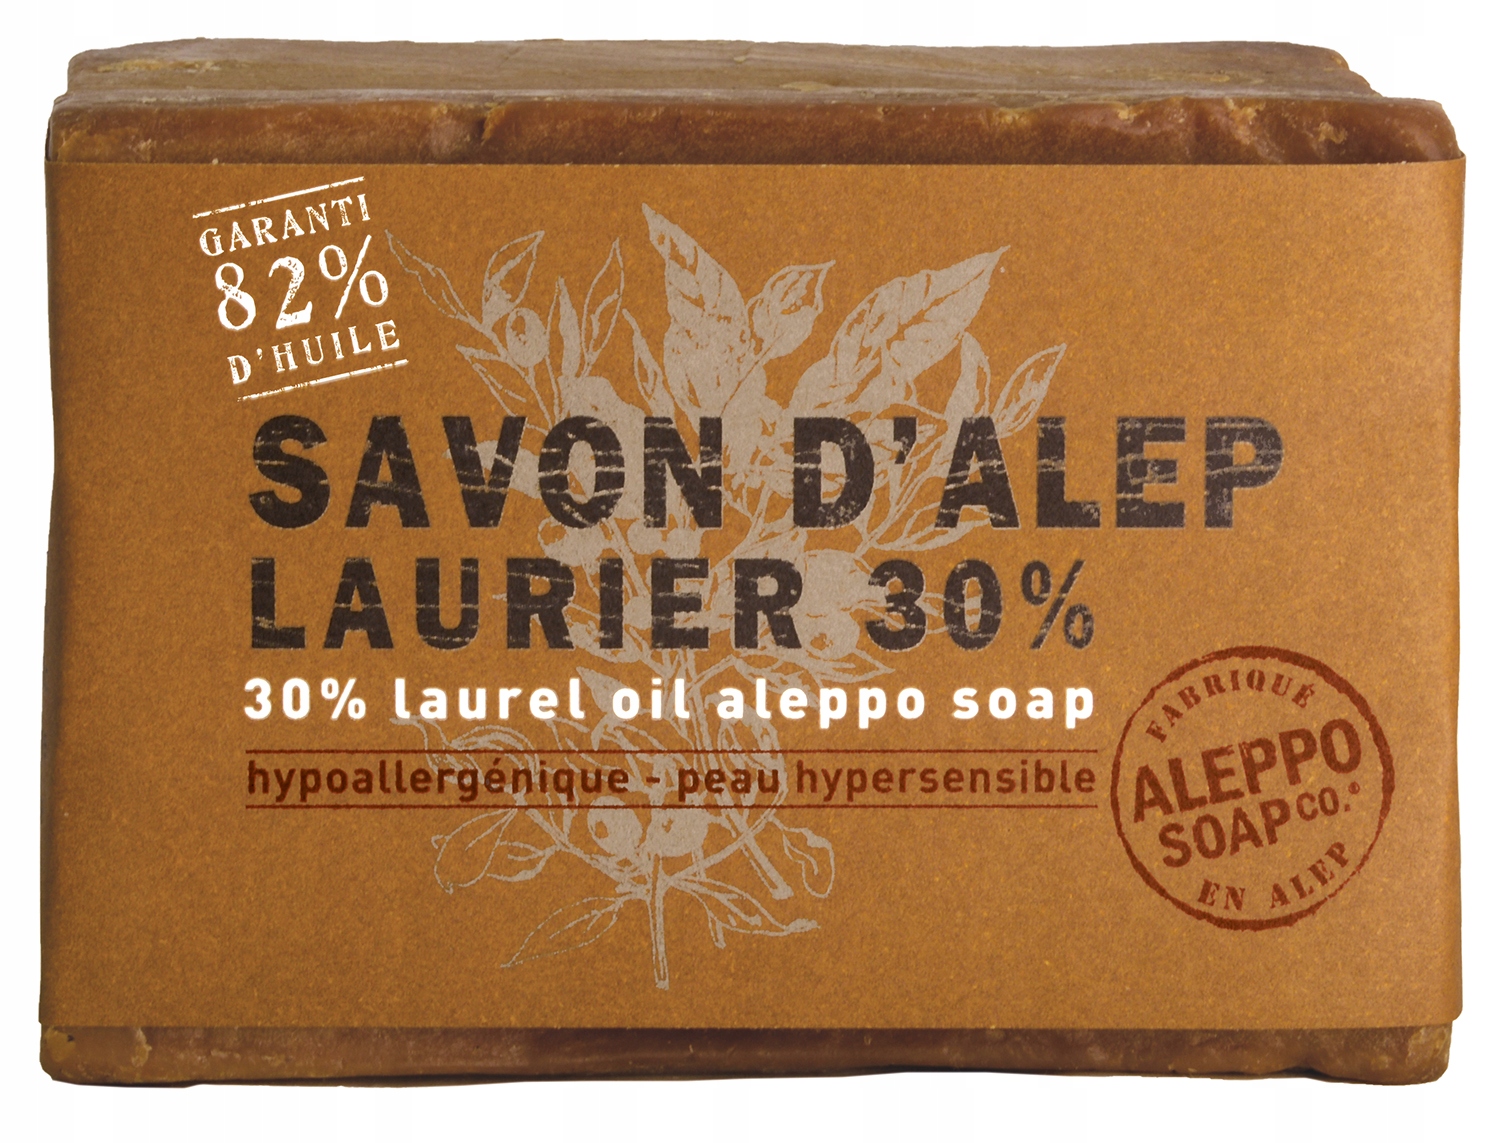 Aleppo Soap Co. Mydlo Aleppo 30% lauru 200g zápal azs dermatóza